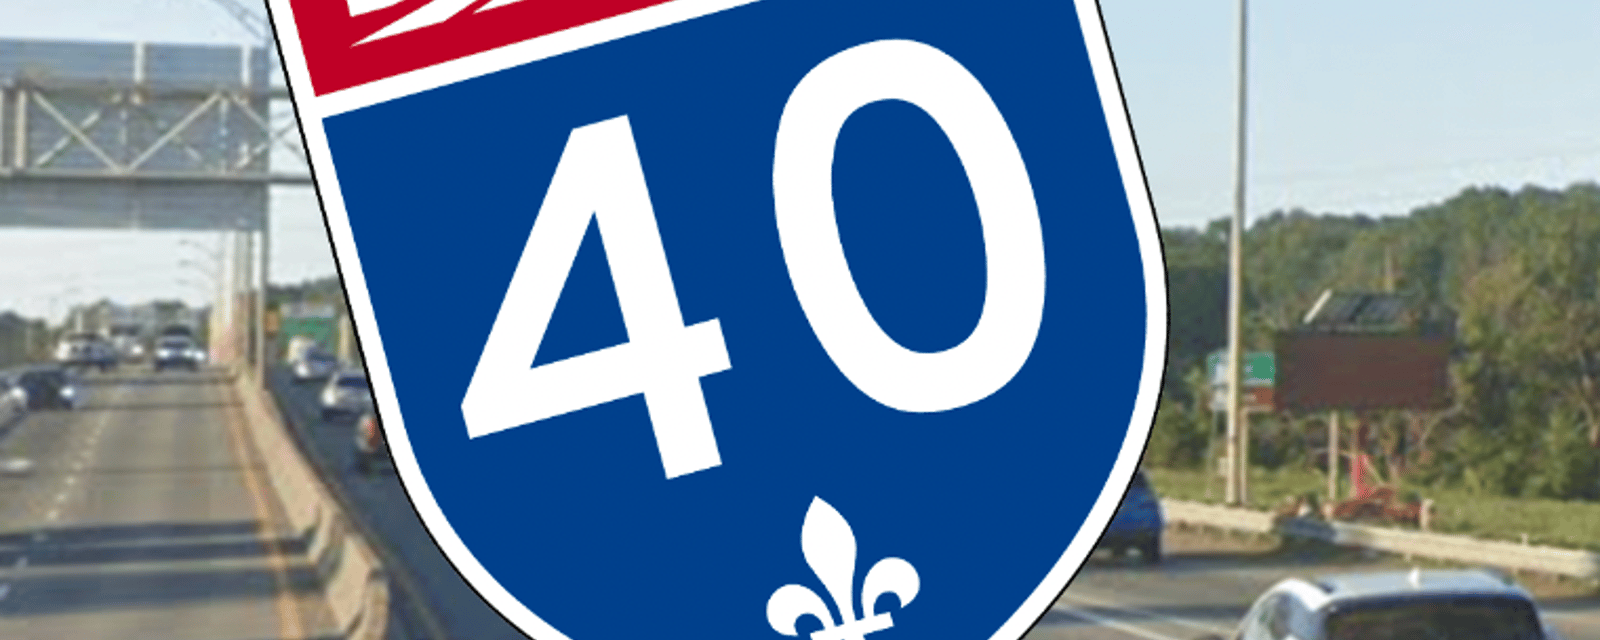 La circulation sera perturbée pendant plus de 3 mois sur l'autoroute 40 